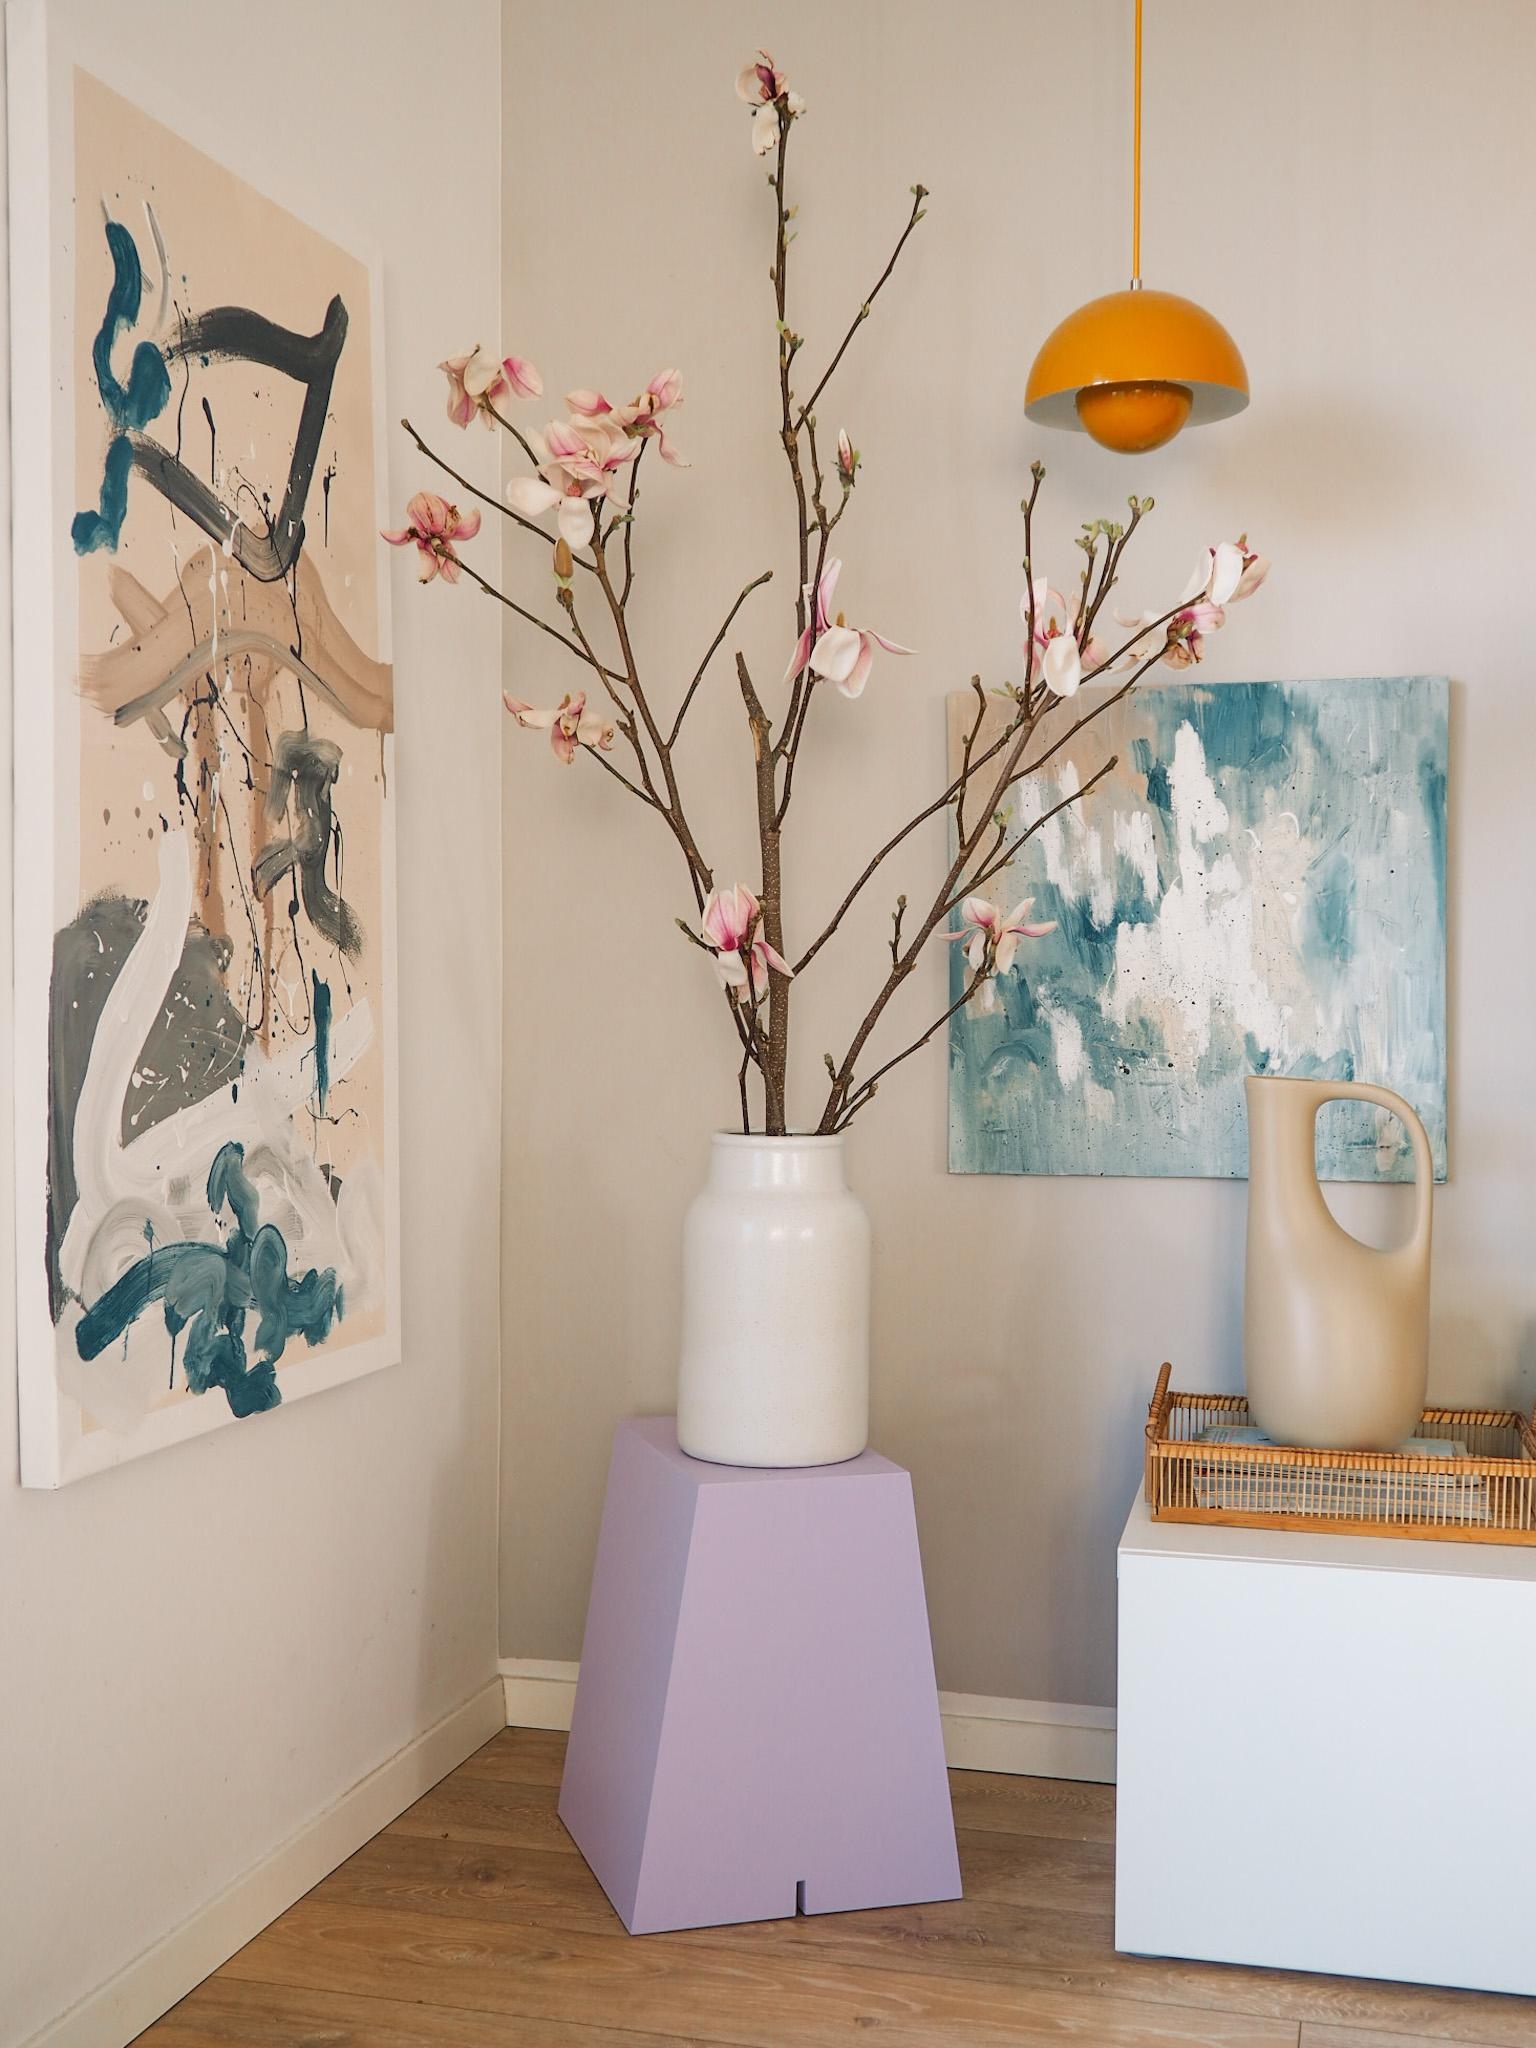 Ganz große Magnolien-Liebe 💜🌸
#flieder #magnolie #buchstabenhocker #interior #flowers